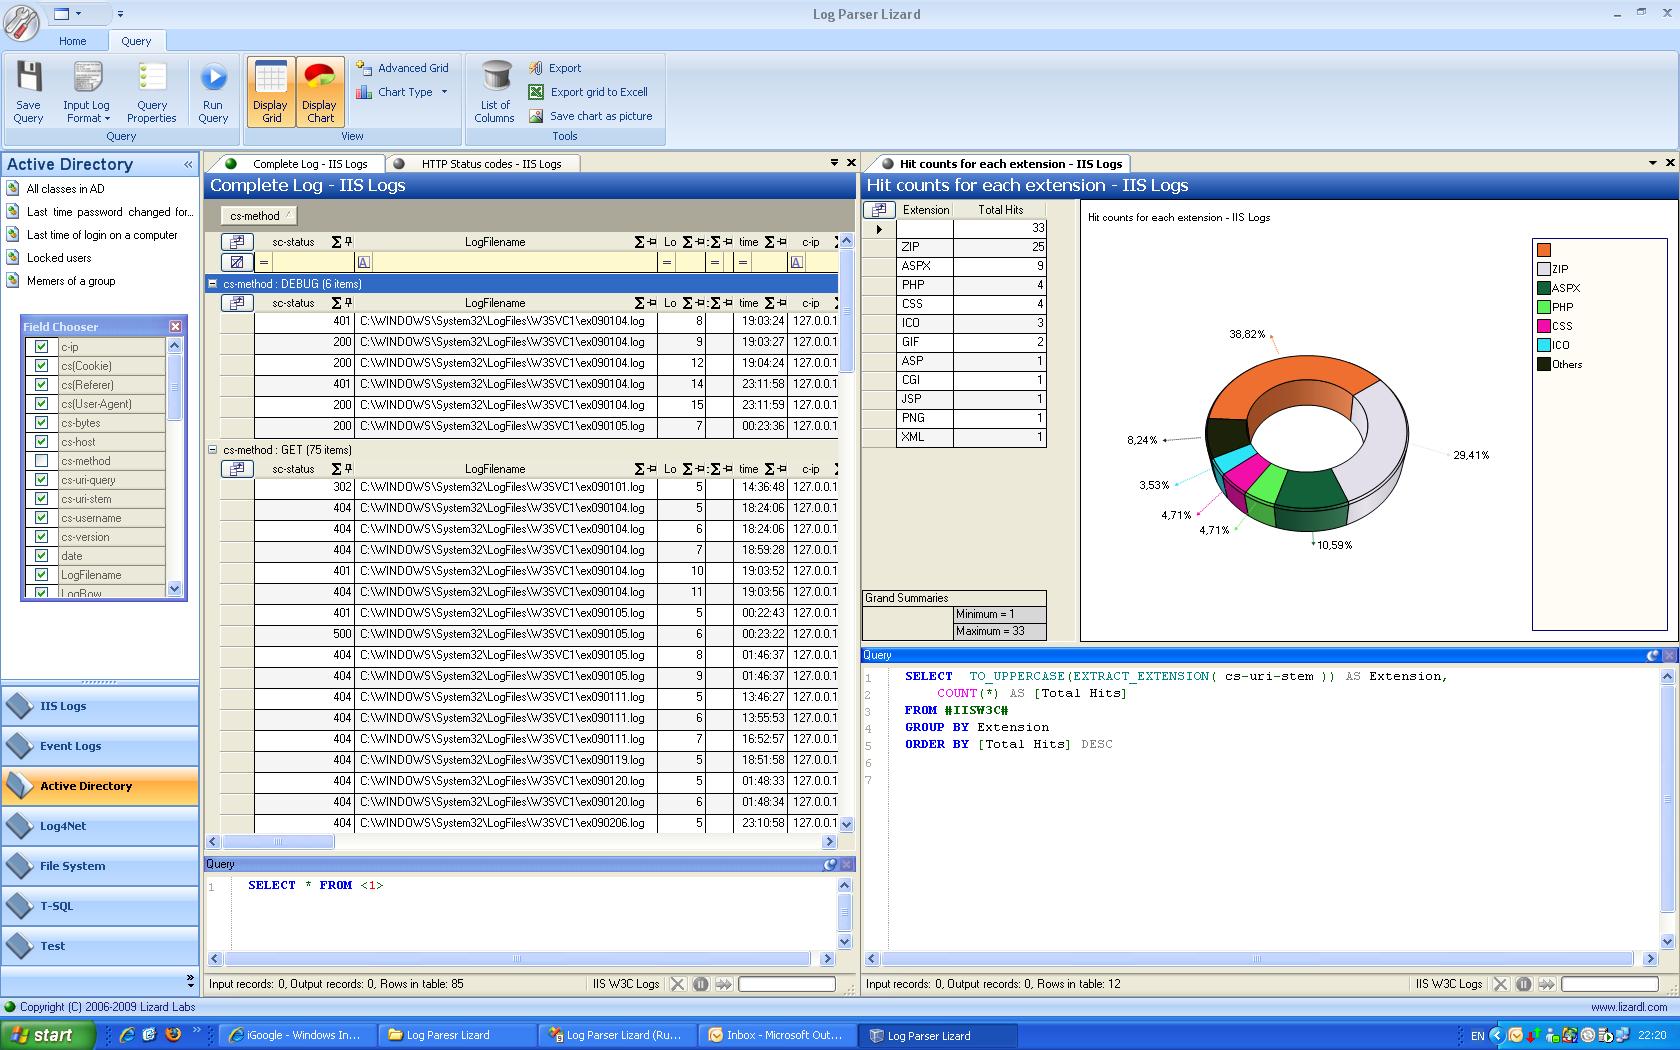 Log Parser Lizard 5.6.0 software screenshot